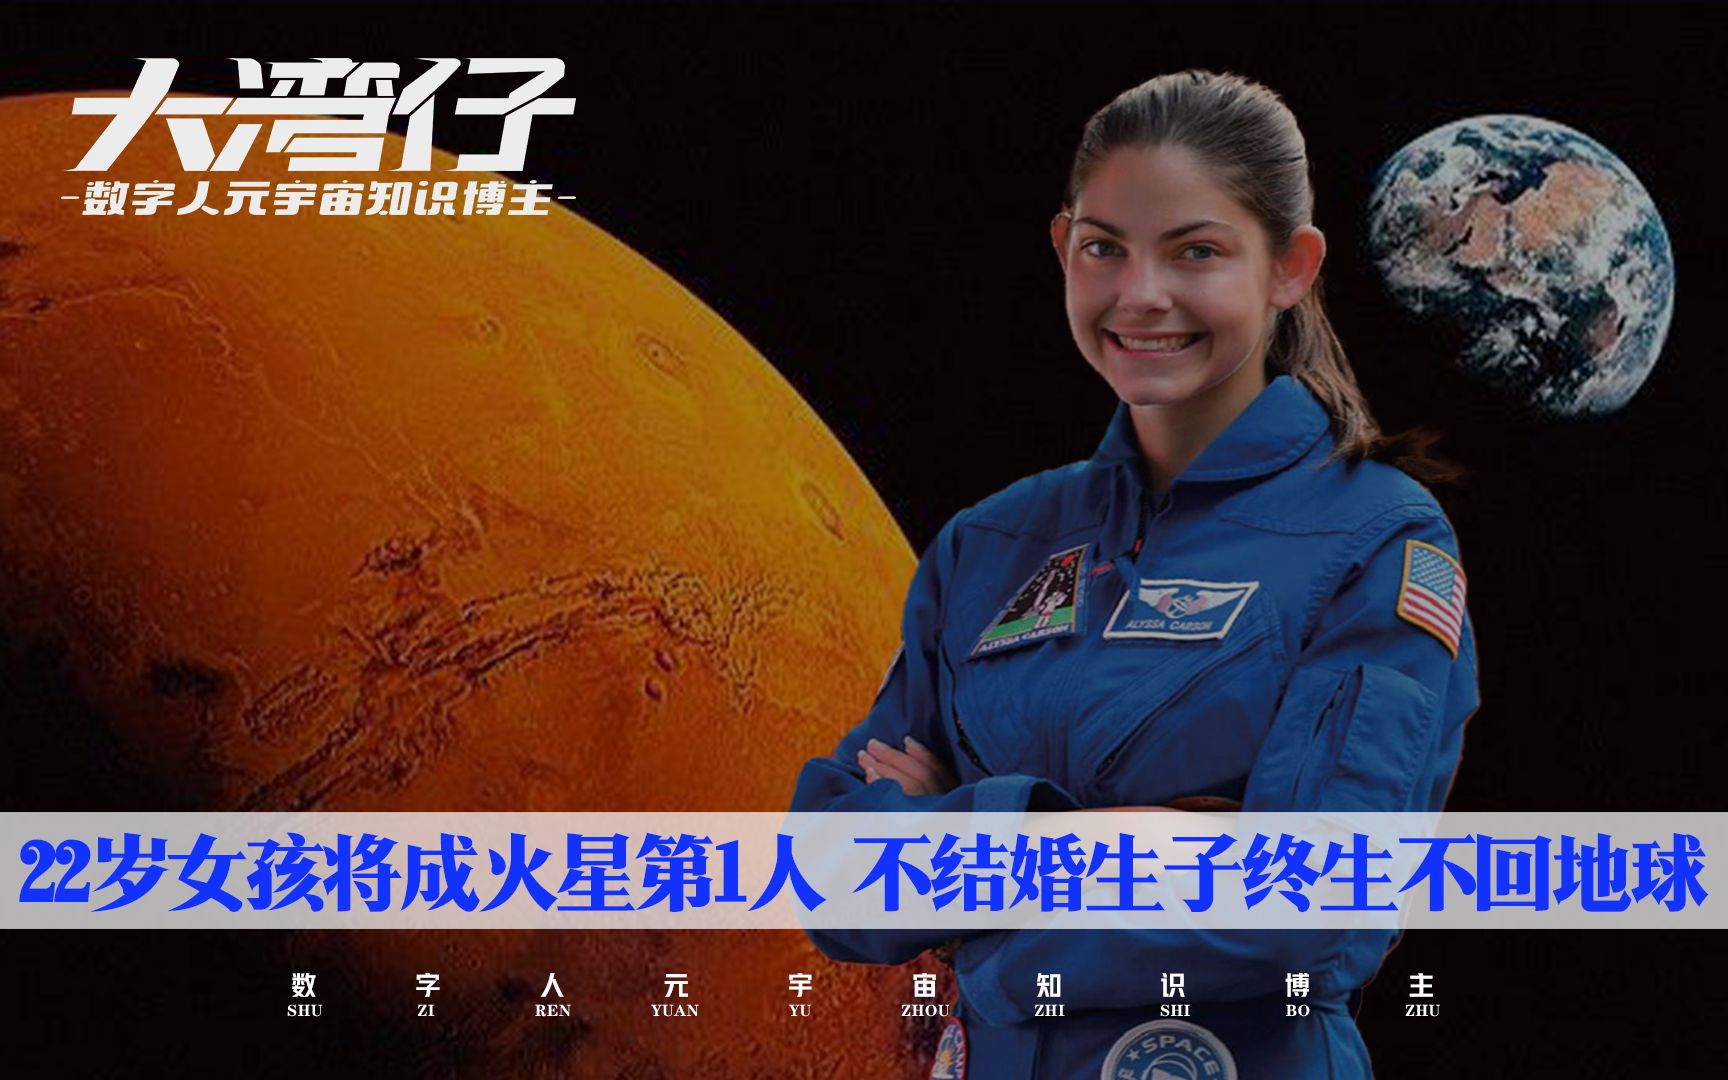 22岁女孩将成登陆火星第1人  不结婚生子终生不得回地球